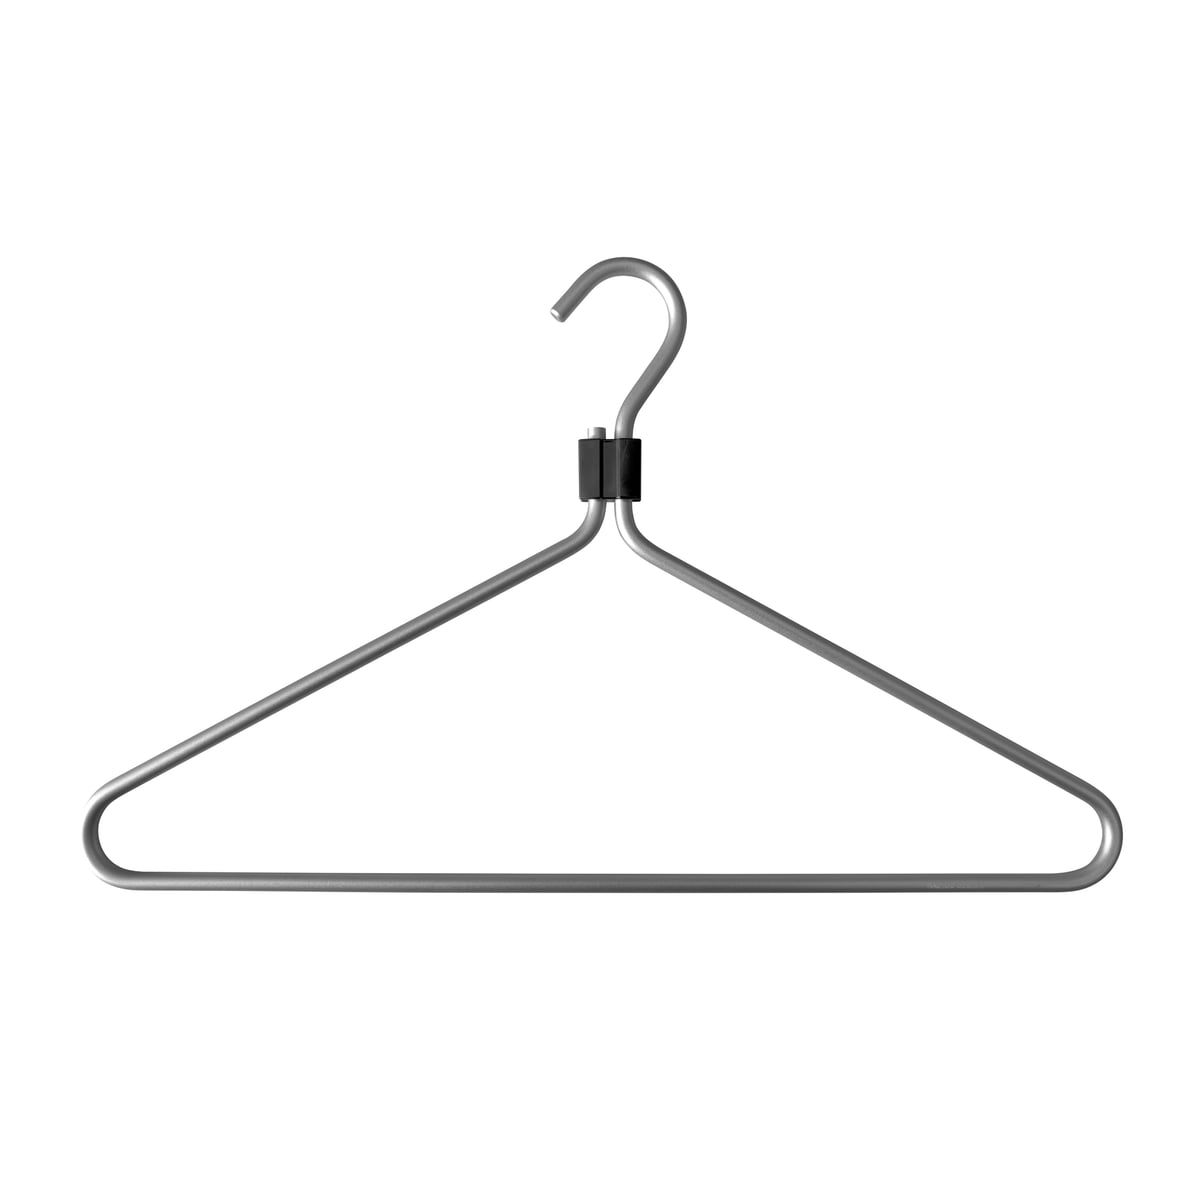 Radius Design - Coat hanger set